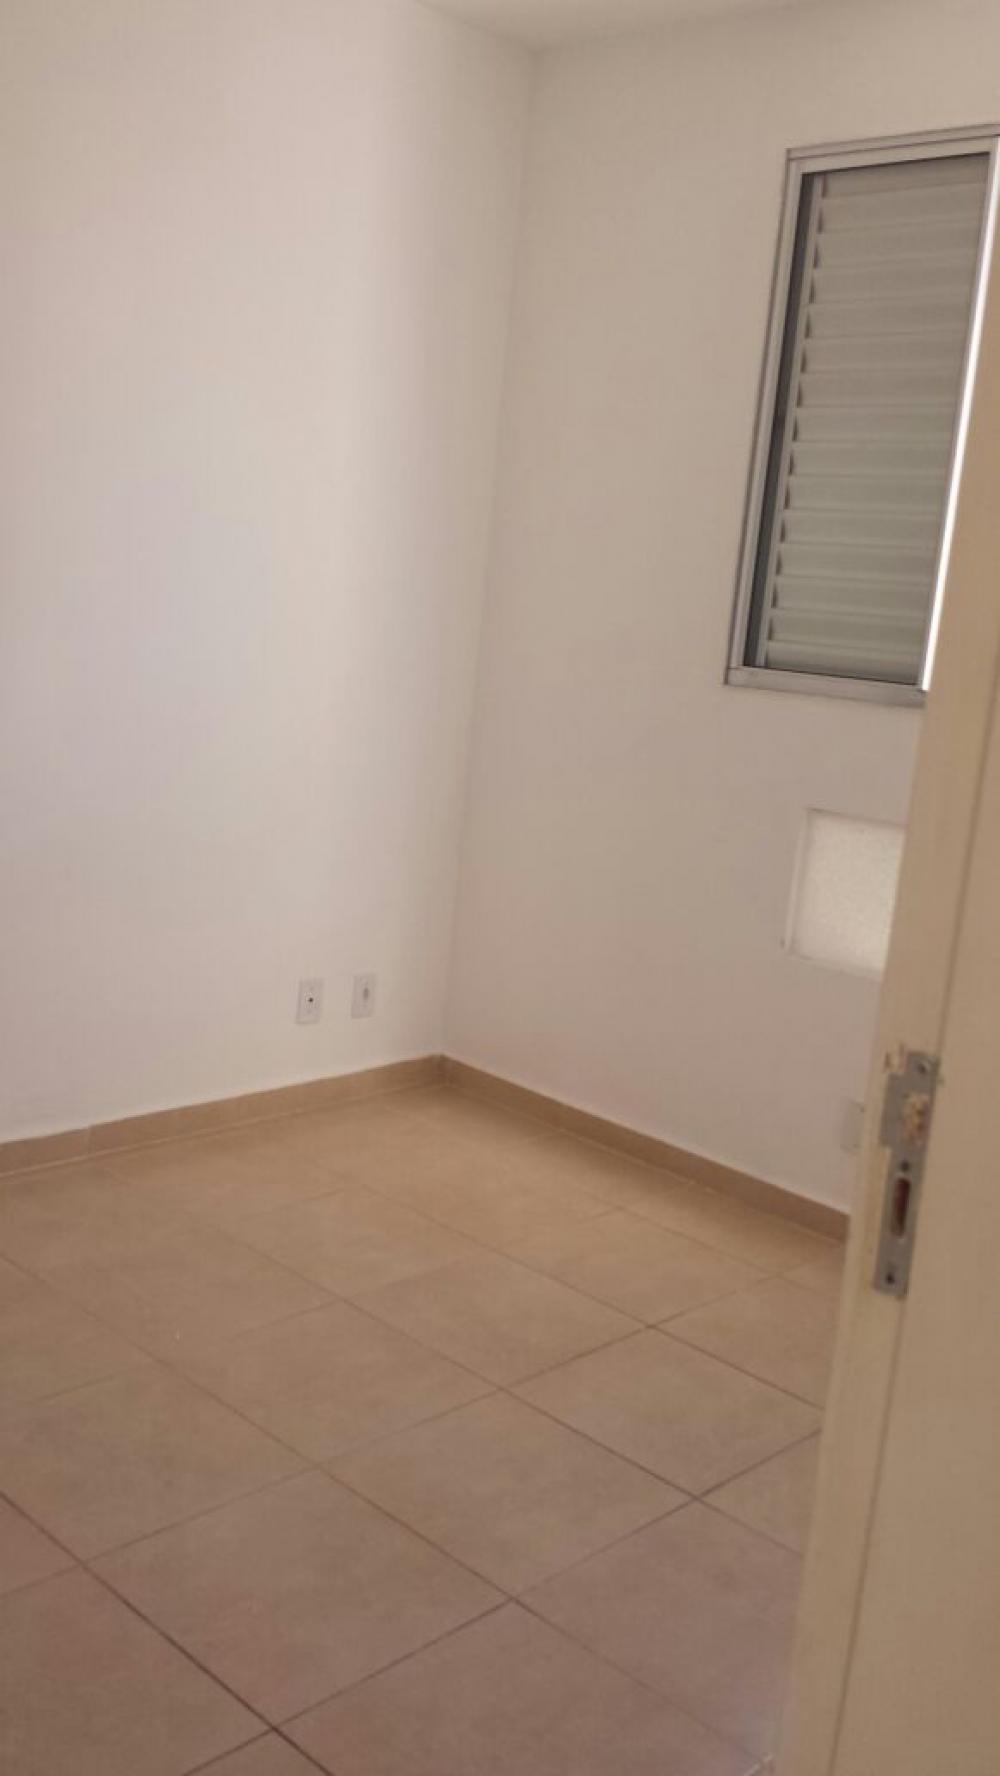 Comprar Apartamento / Padrão em São José do Rio Preto R$ 150.000,00 - Foto 12